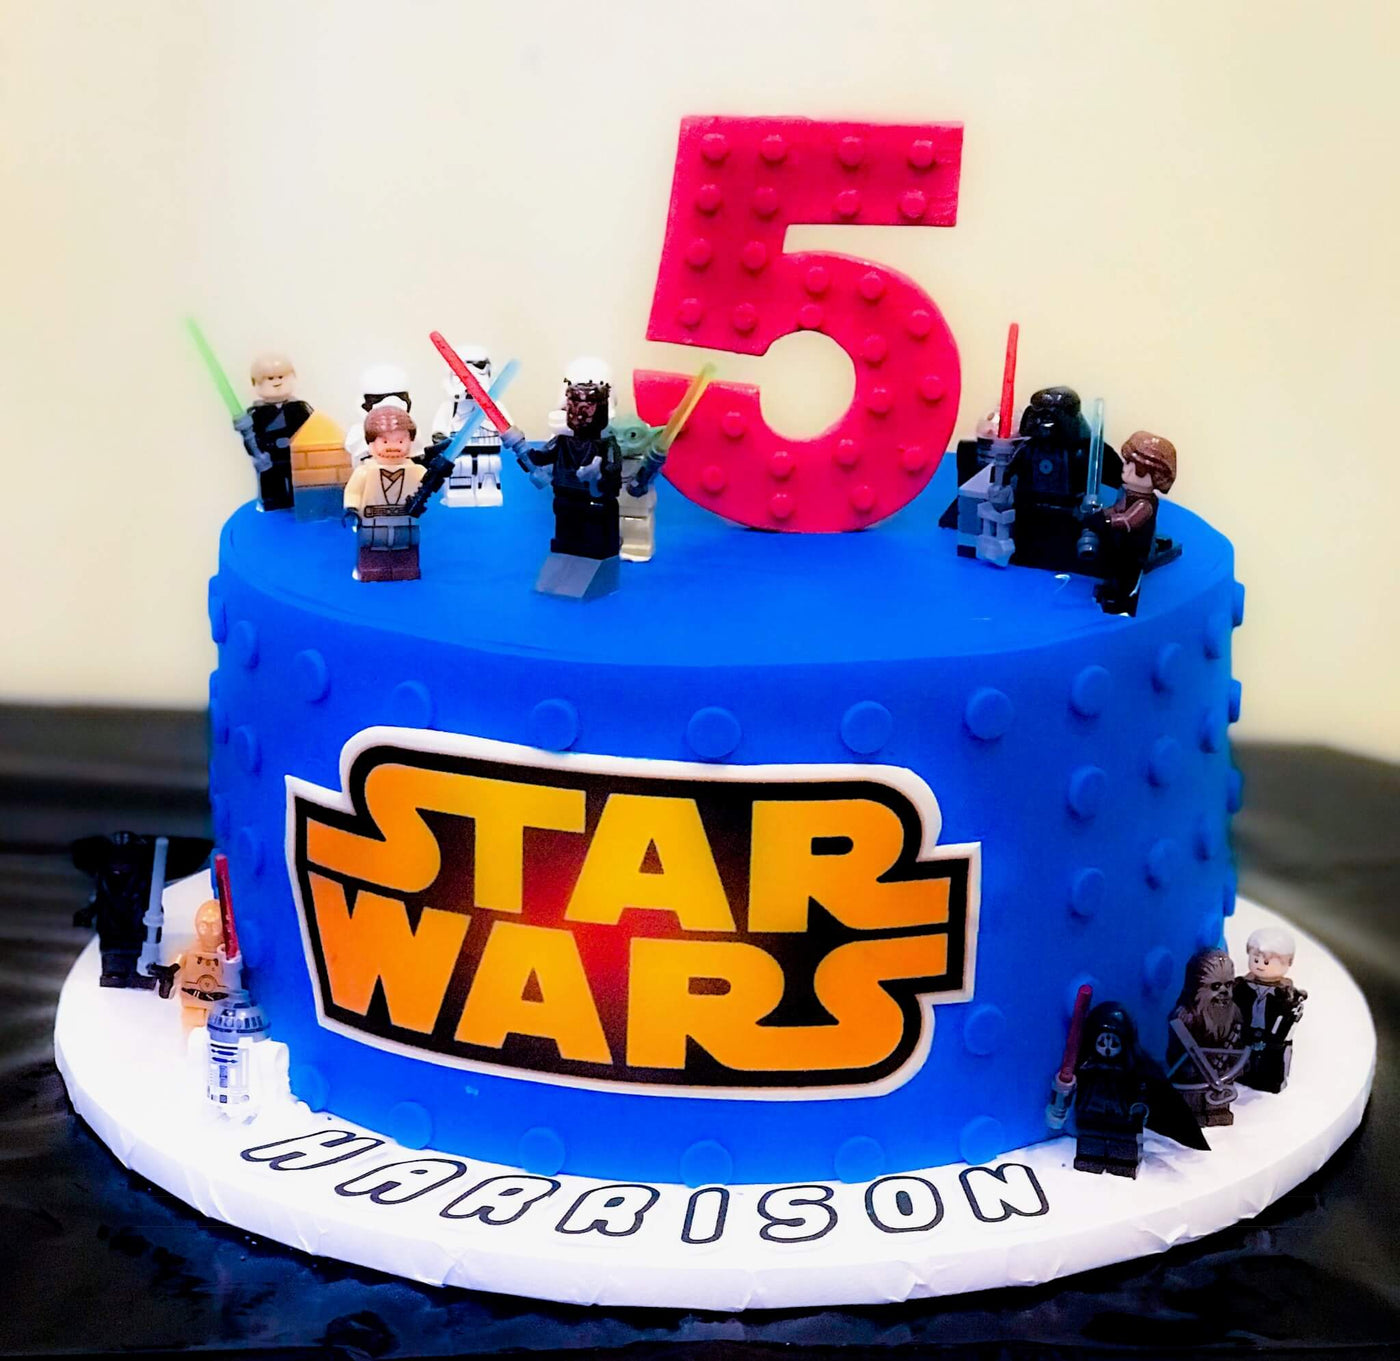 Star Wars Cake - Sweet E's Bake Shop